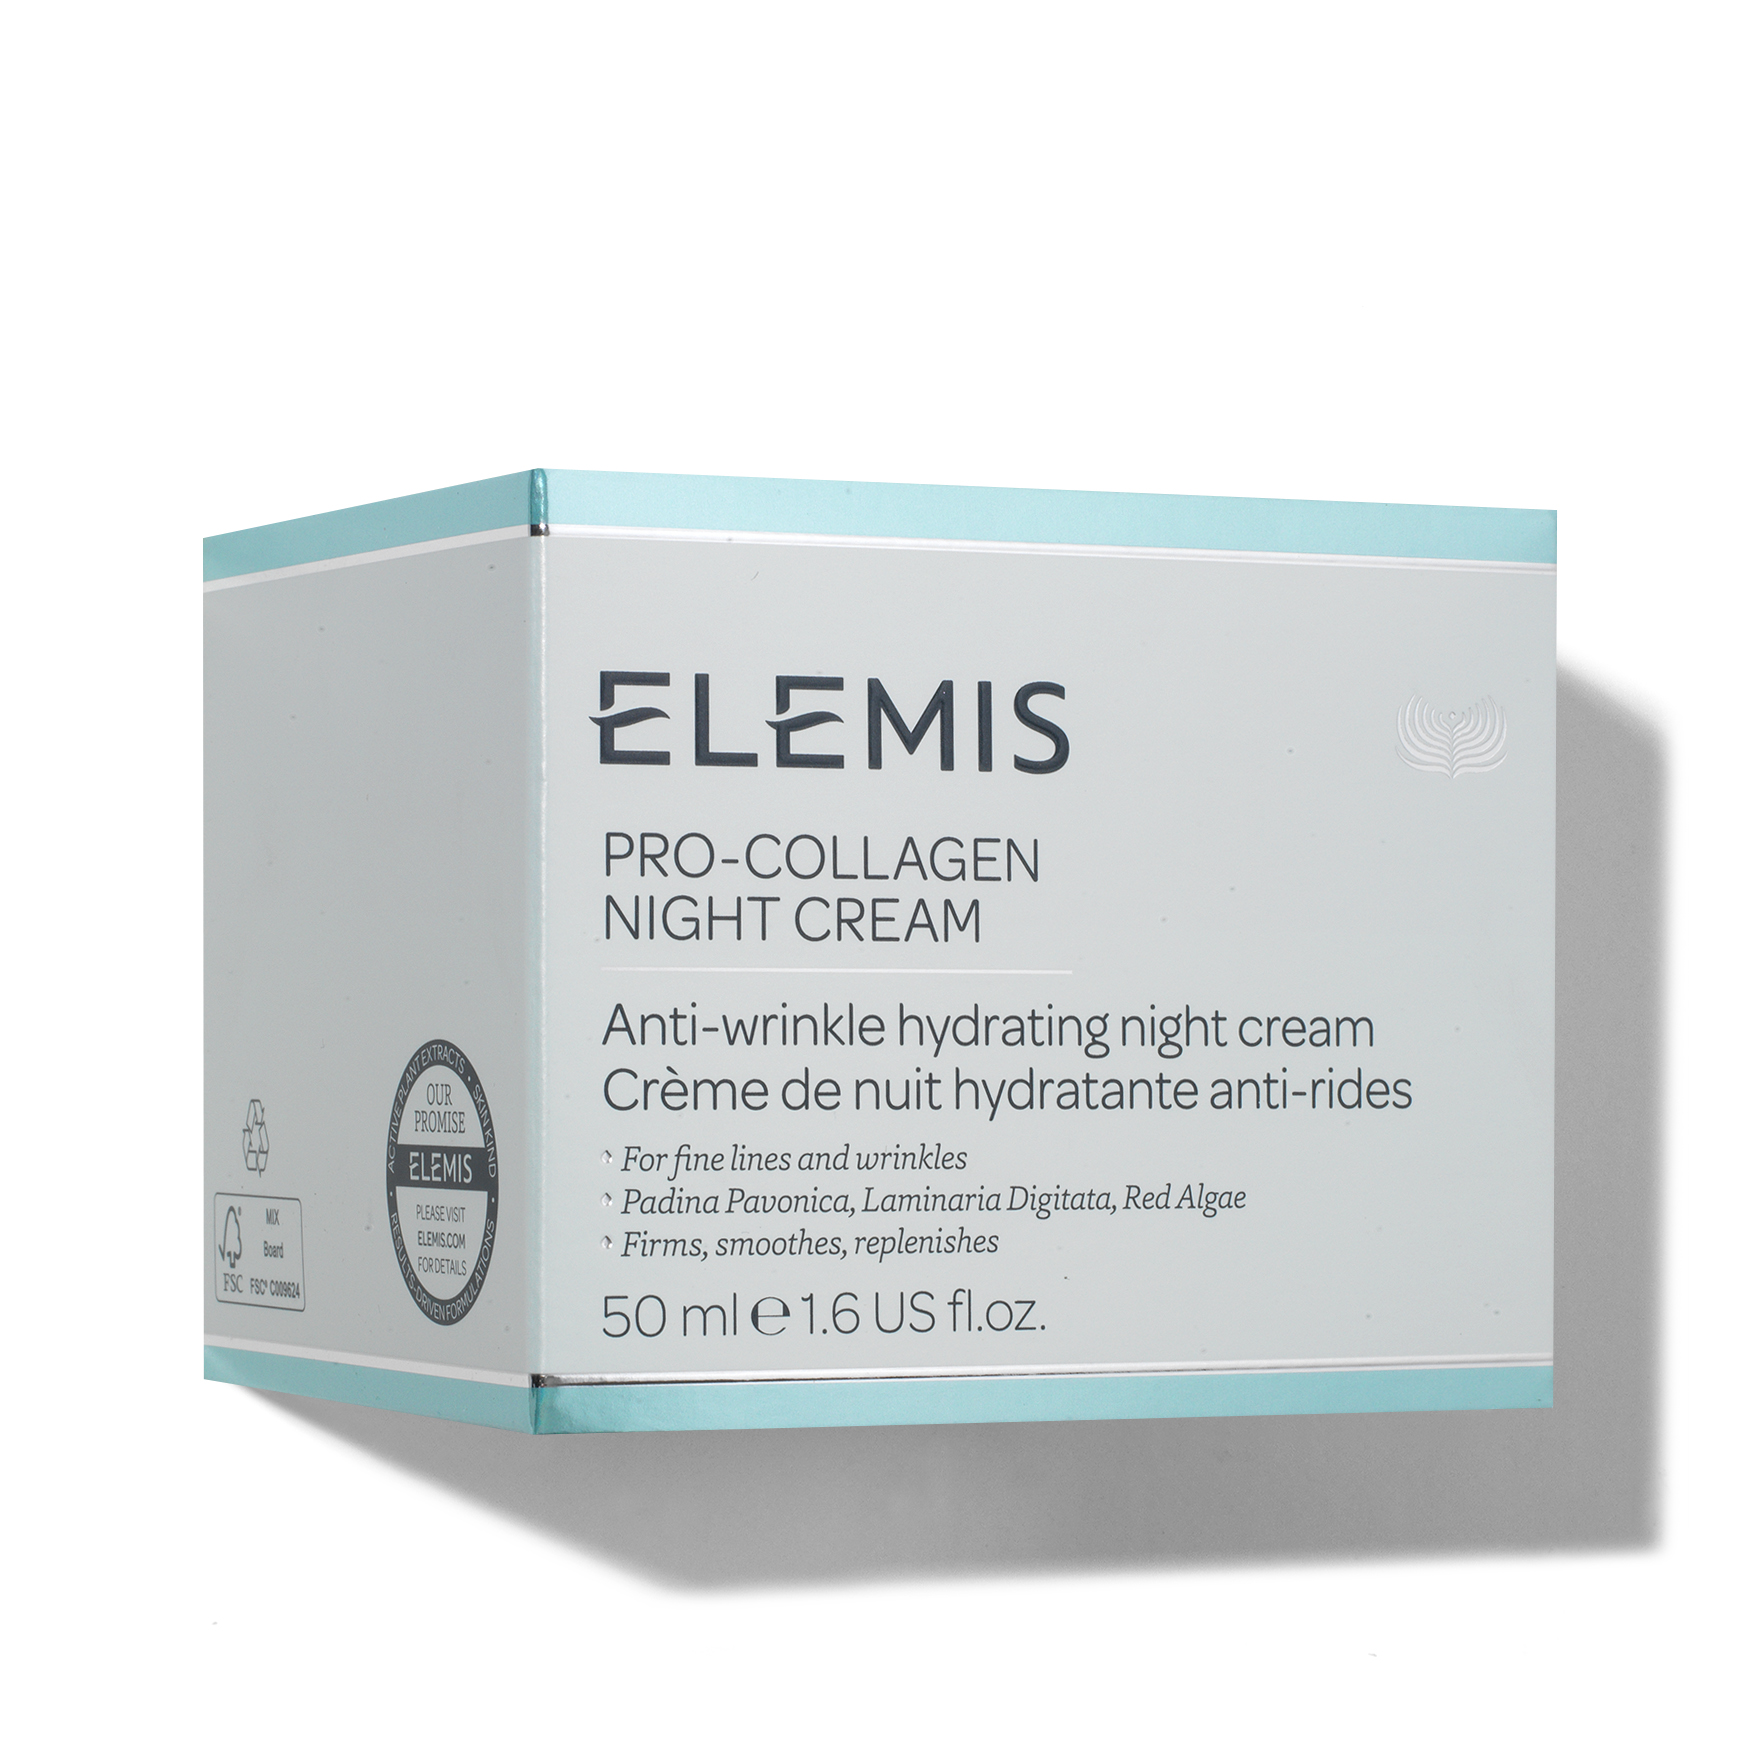 ELEMIS Pro-Collagen Night Cream